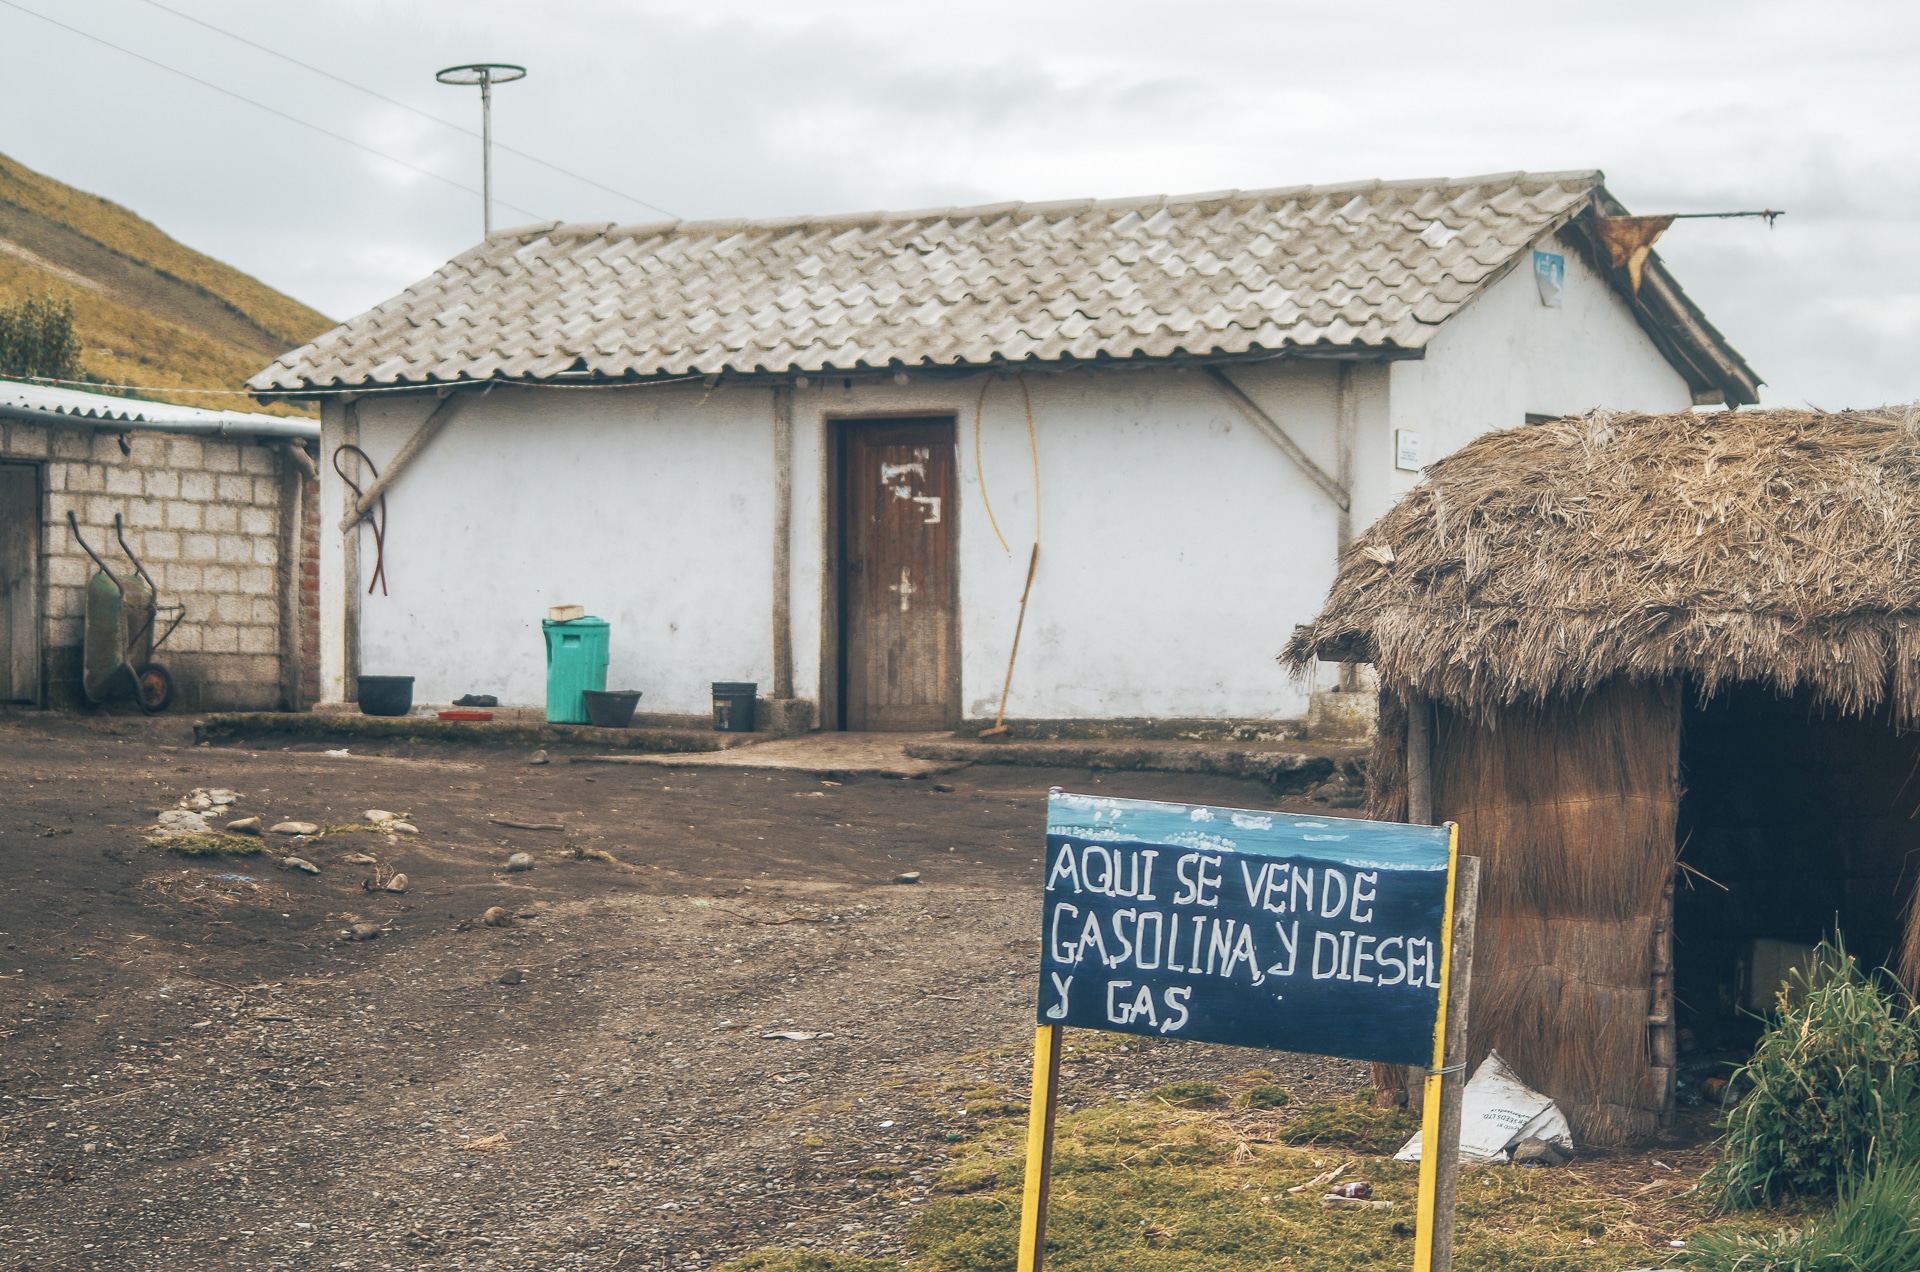 maison proposant de l'essence sur une route en Equateur